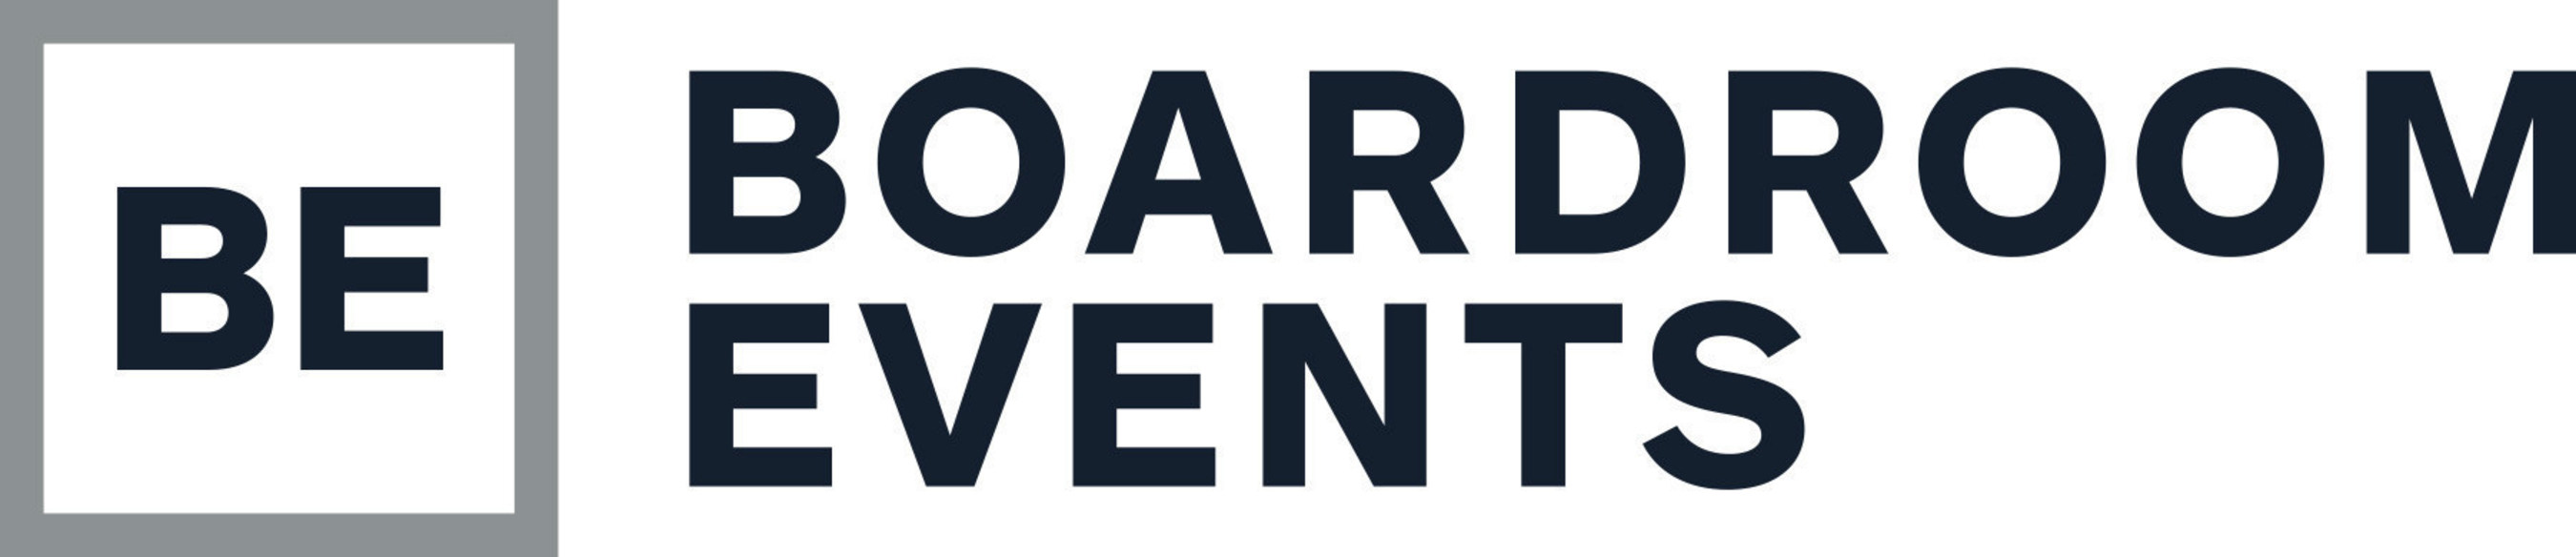 Boardroom Events